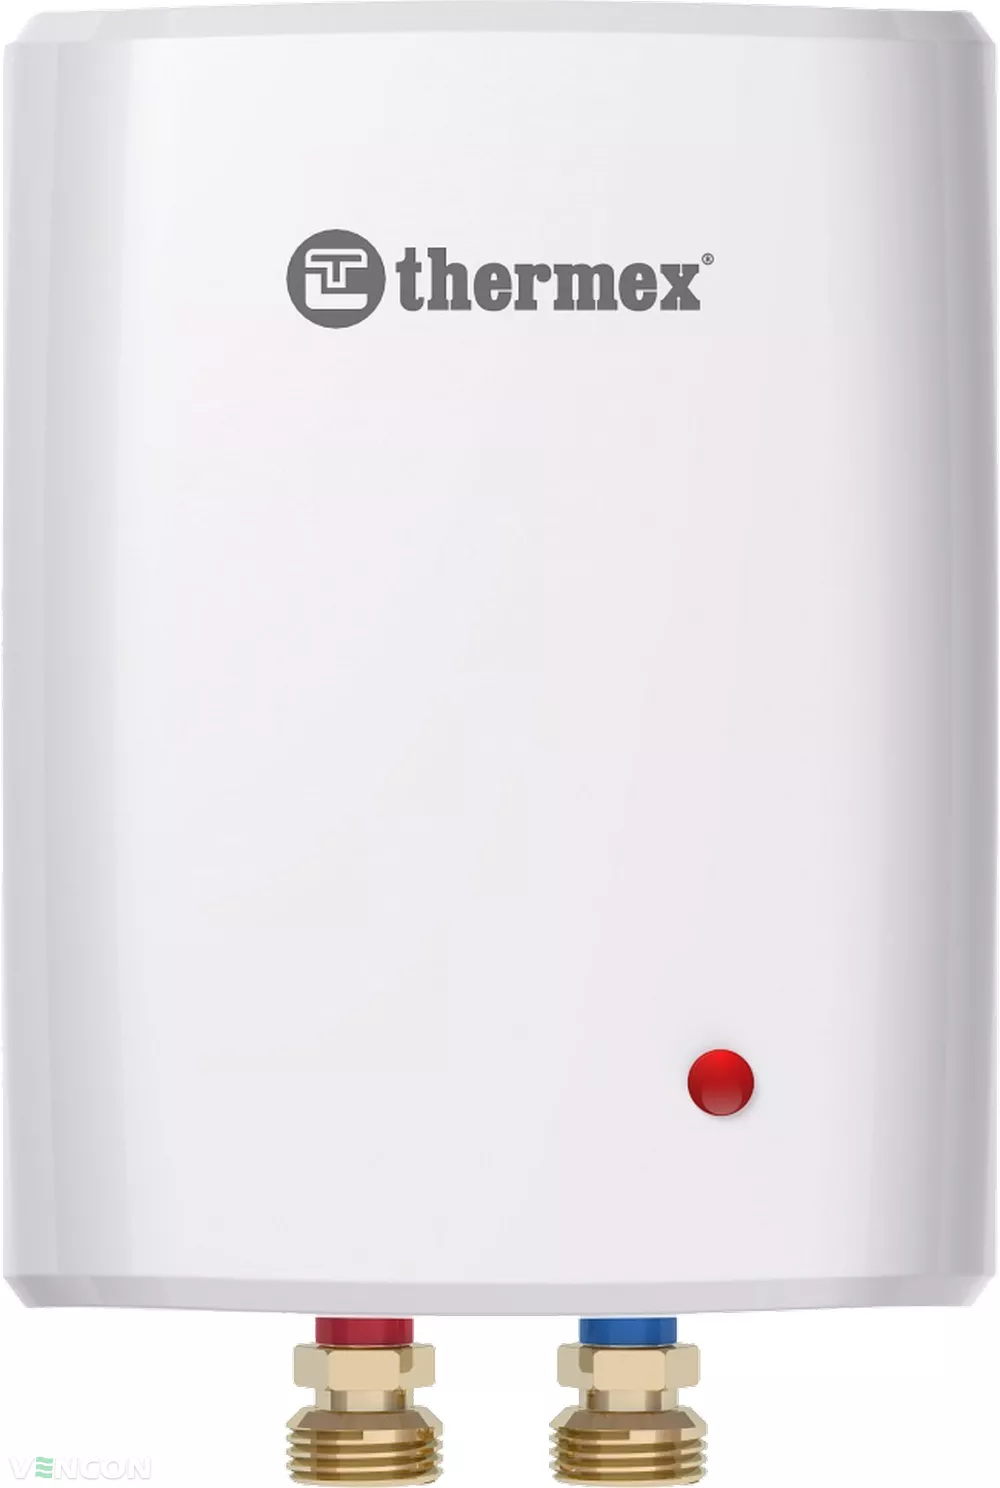 Проточный водонагреватель Thermex Surf 3500 цена 2884.00 грн - фотография 2